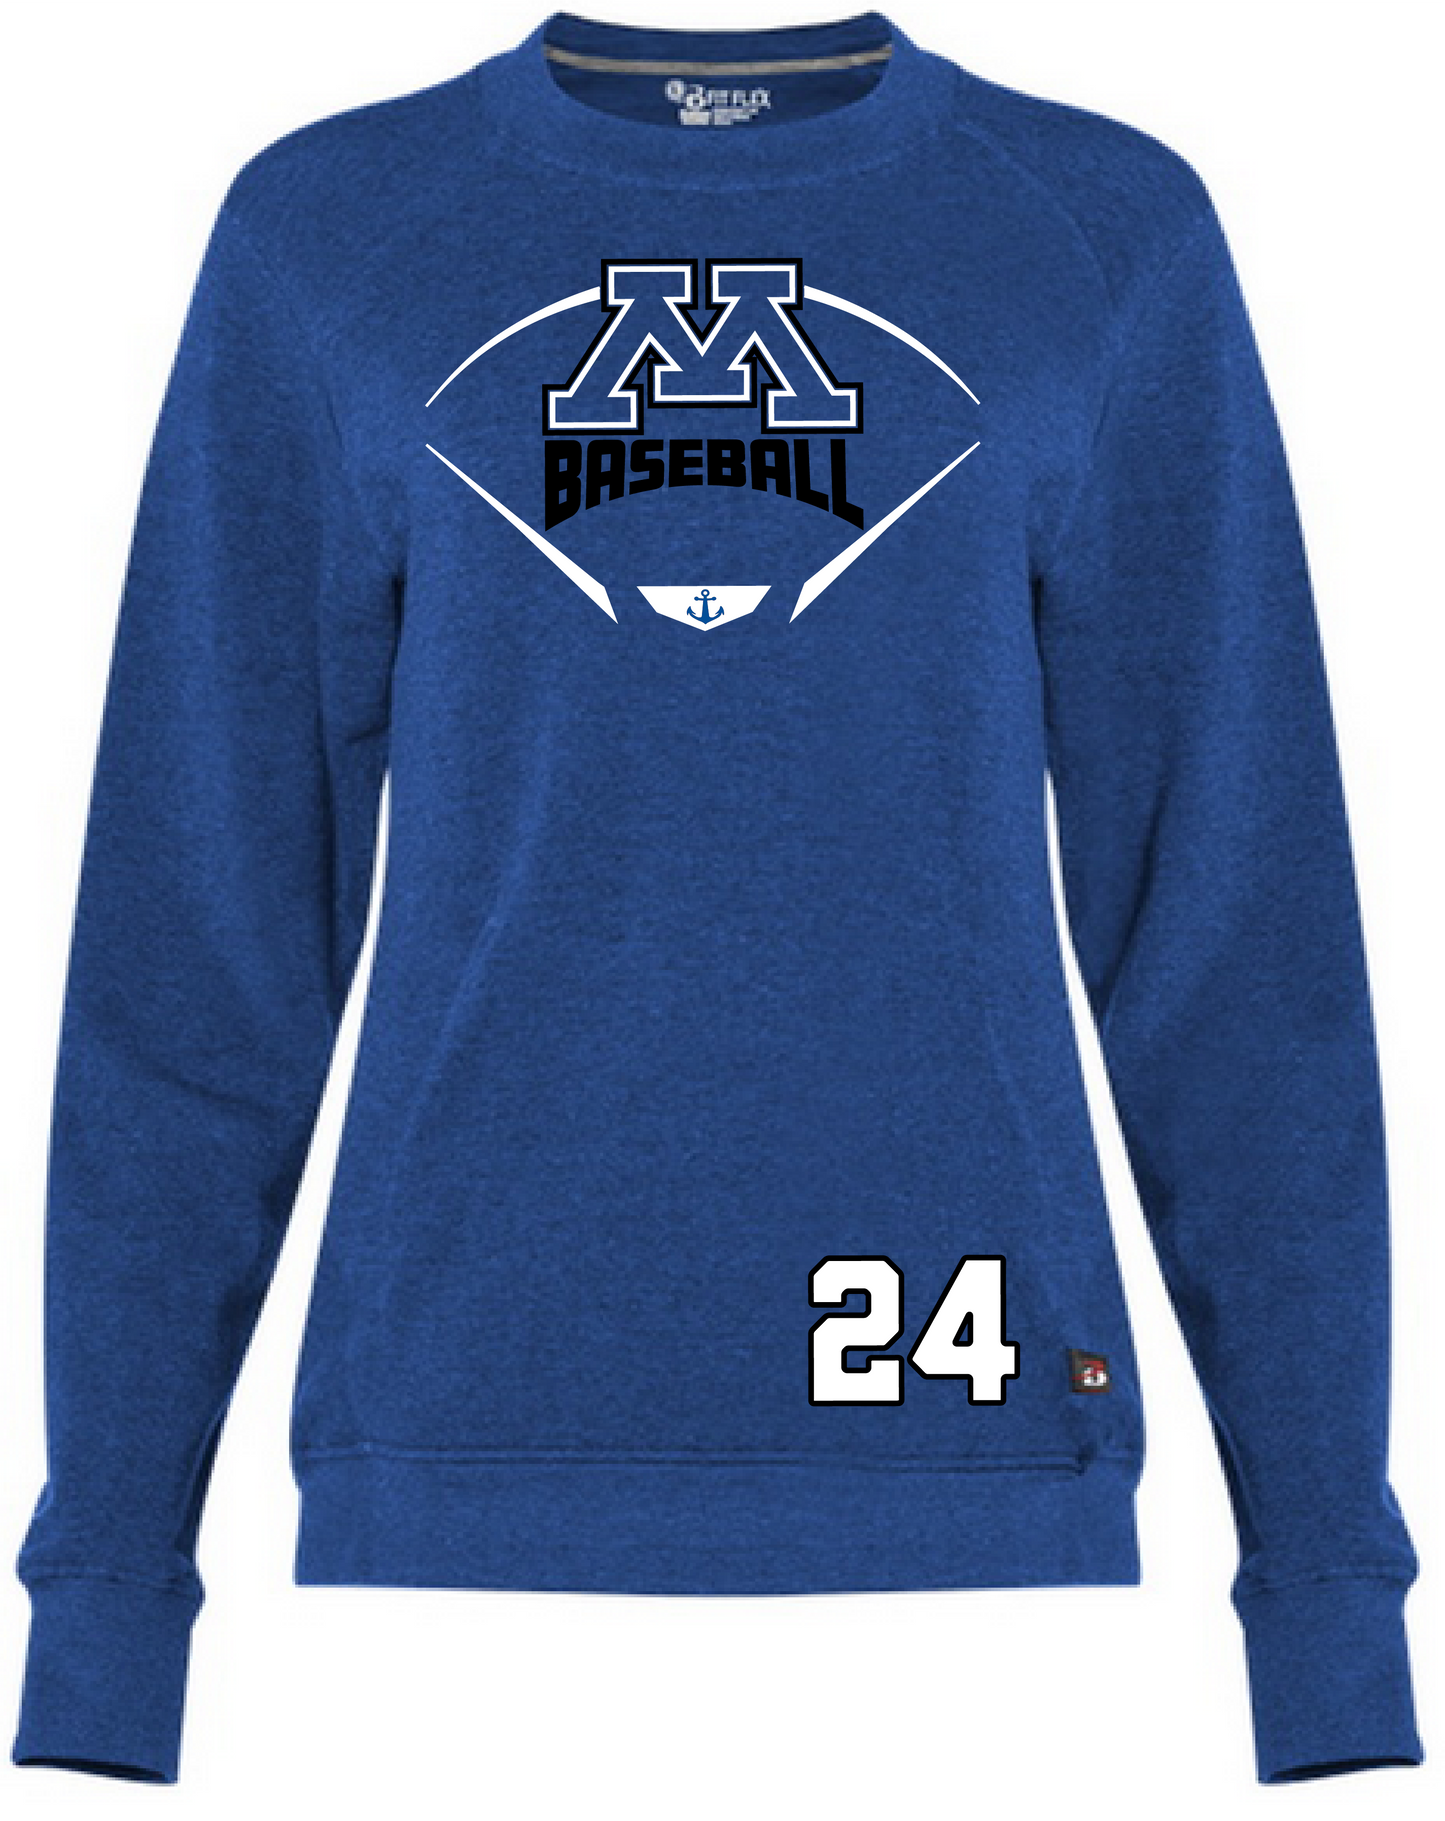 Baseball Women's Heathered Crewneck Sweatshirt